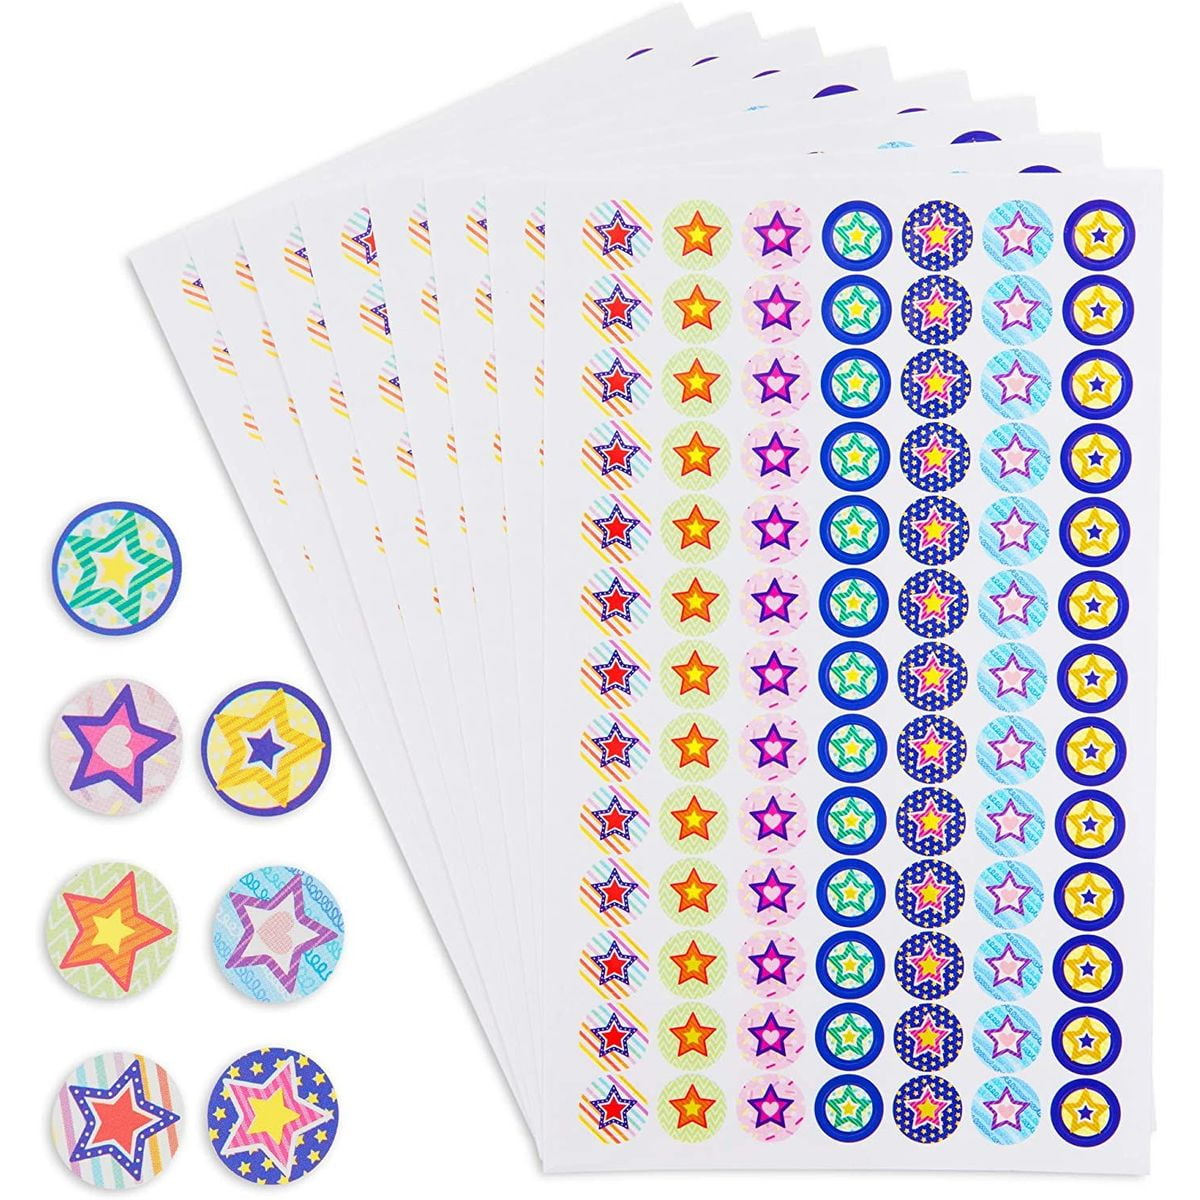 Metallic SILVER Star Reward/Merit Stickers 5 Sheets x 45 Stars Per Sheet 